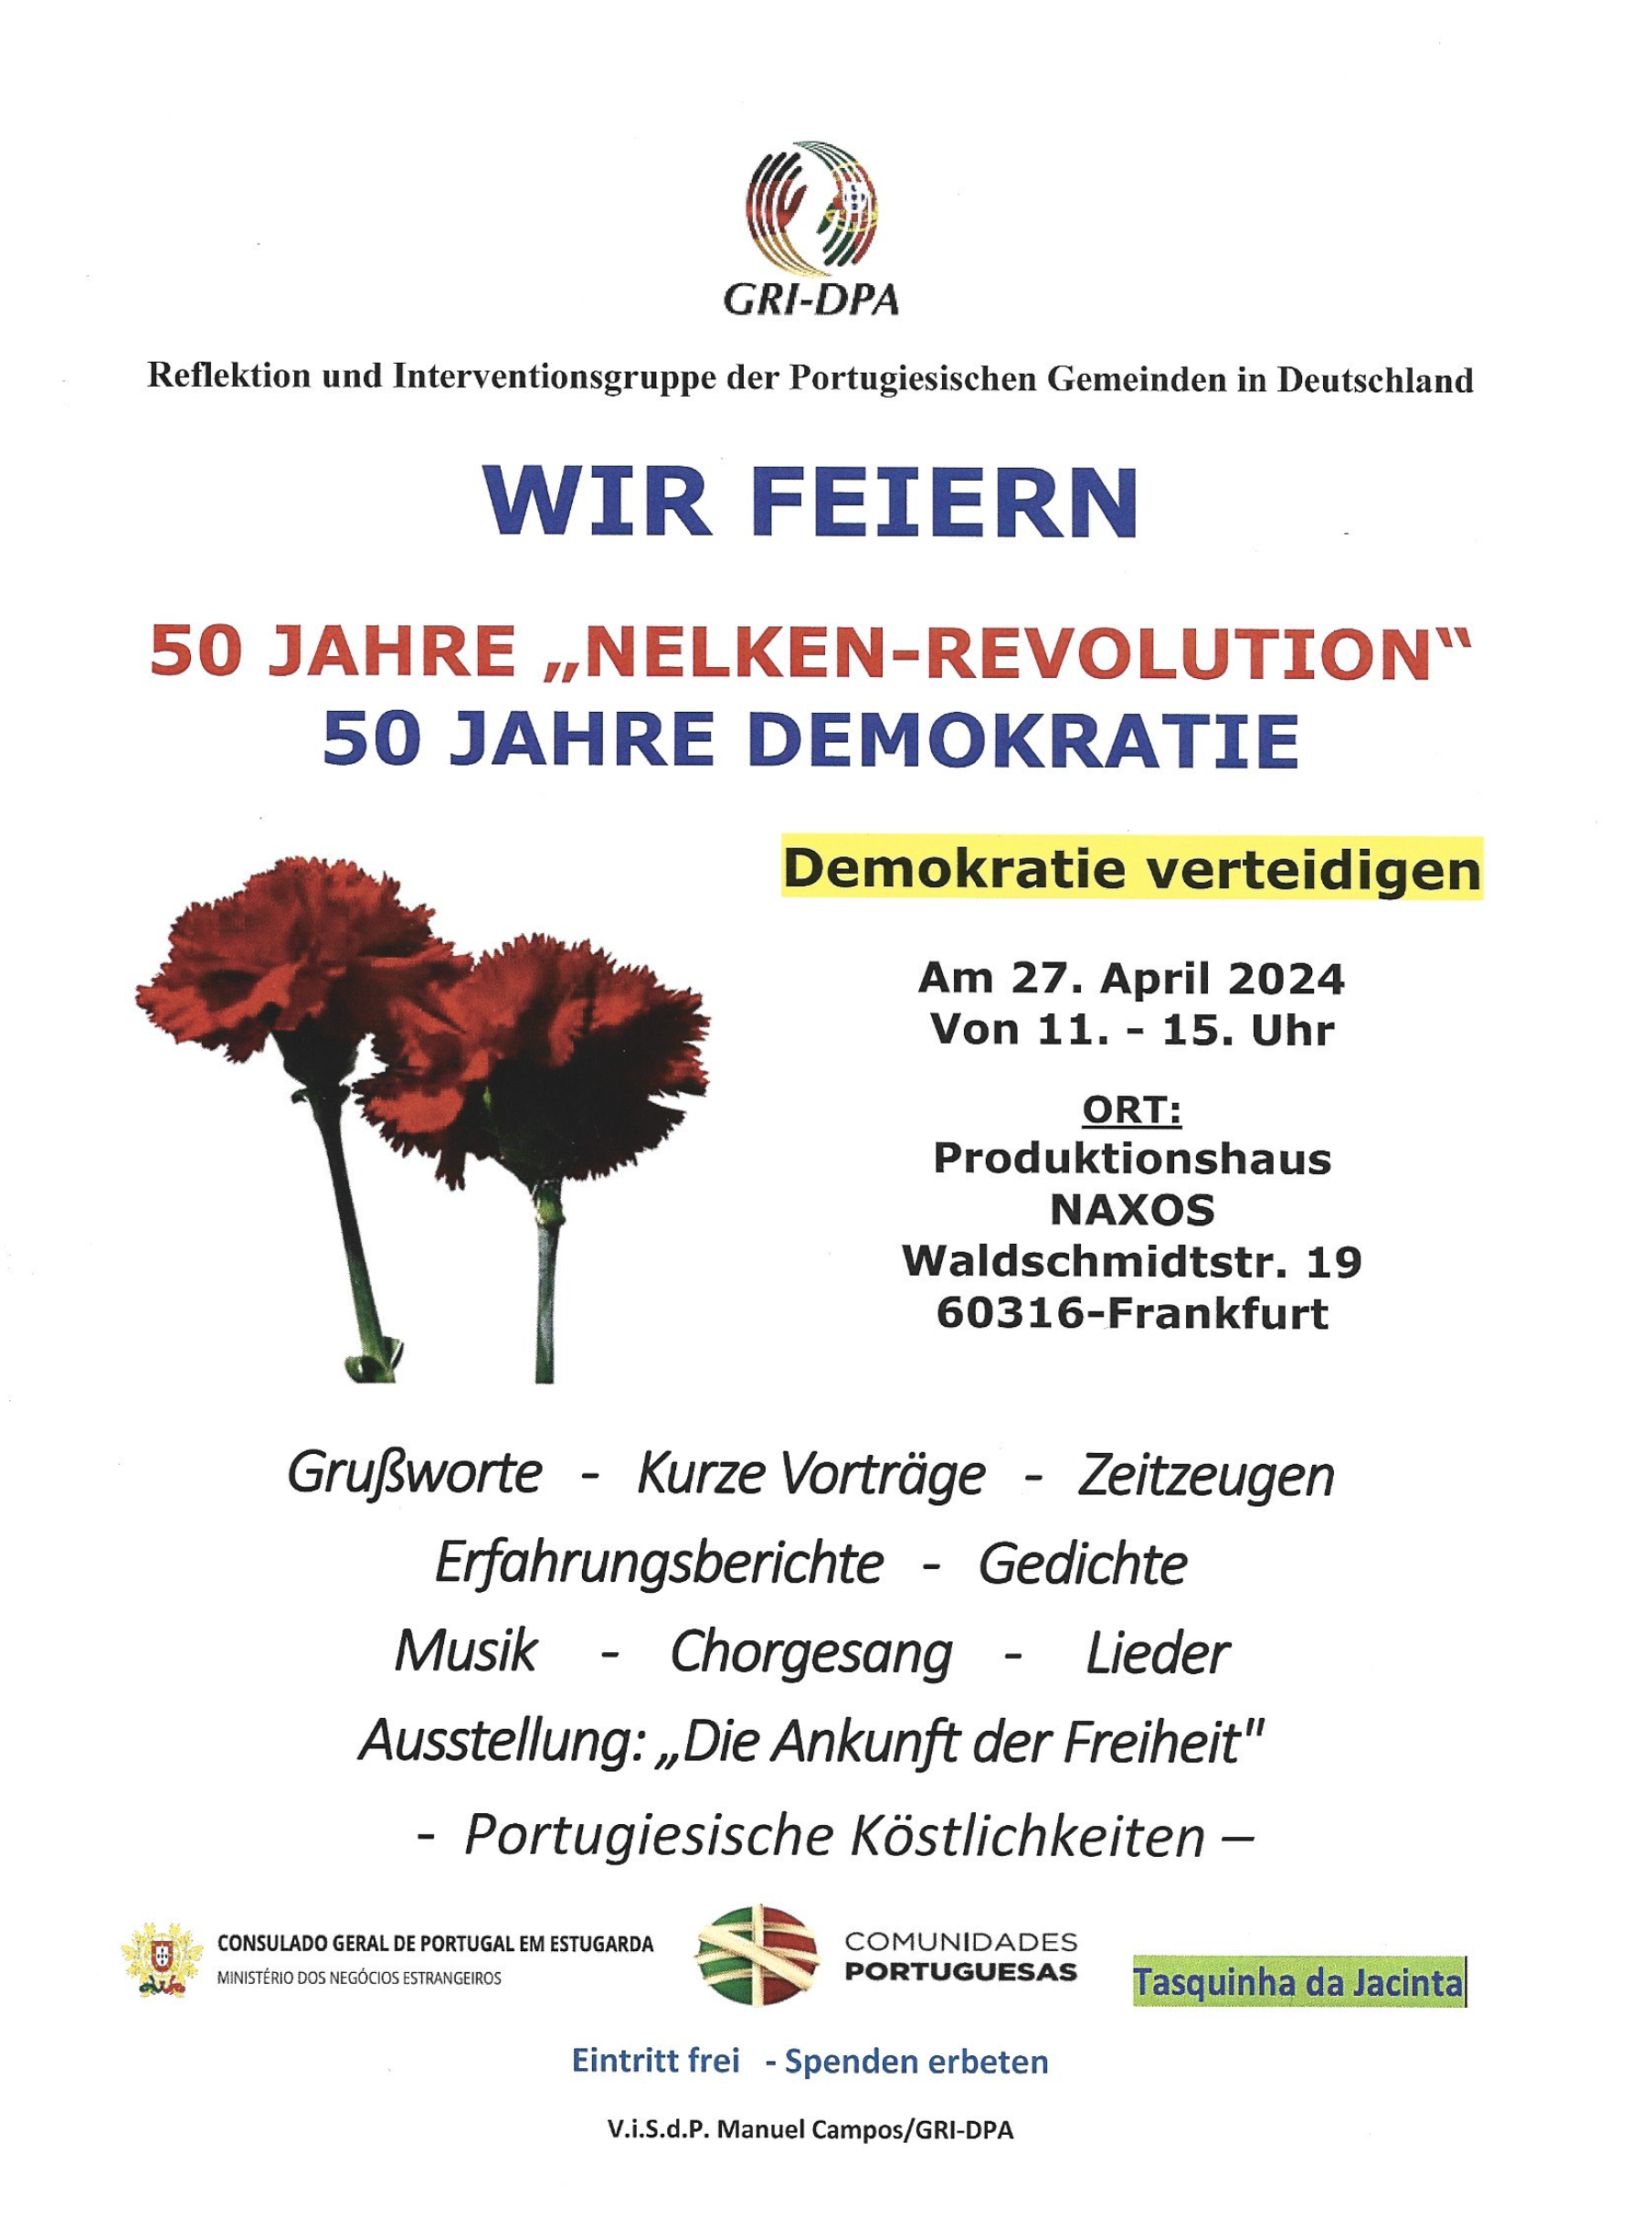 Capa do Evento Festa da Liberdade - Defender a Democracia